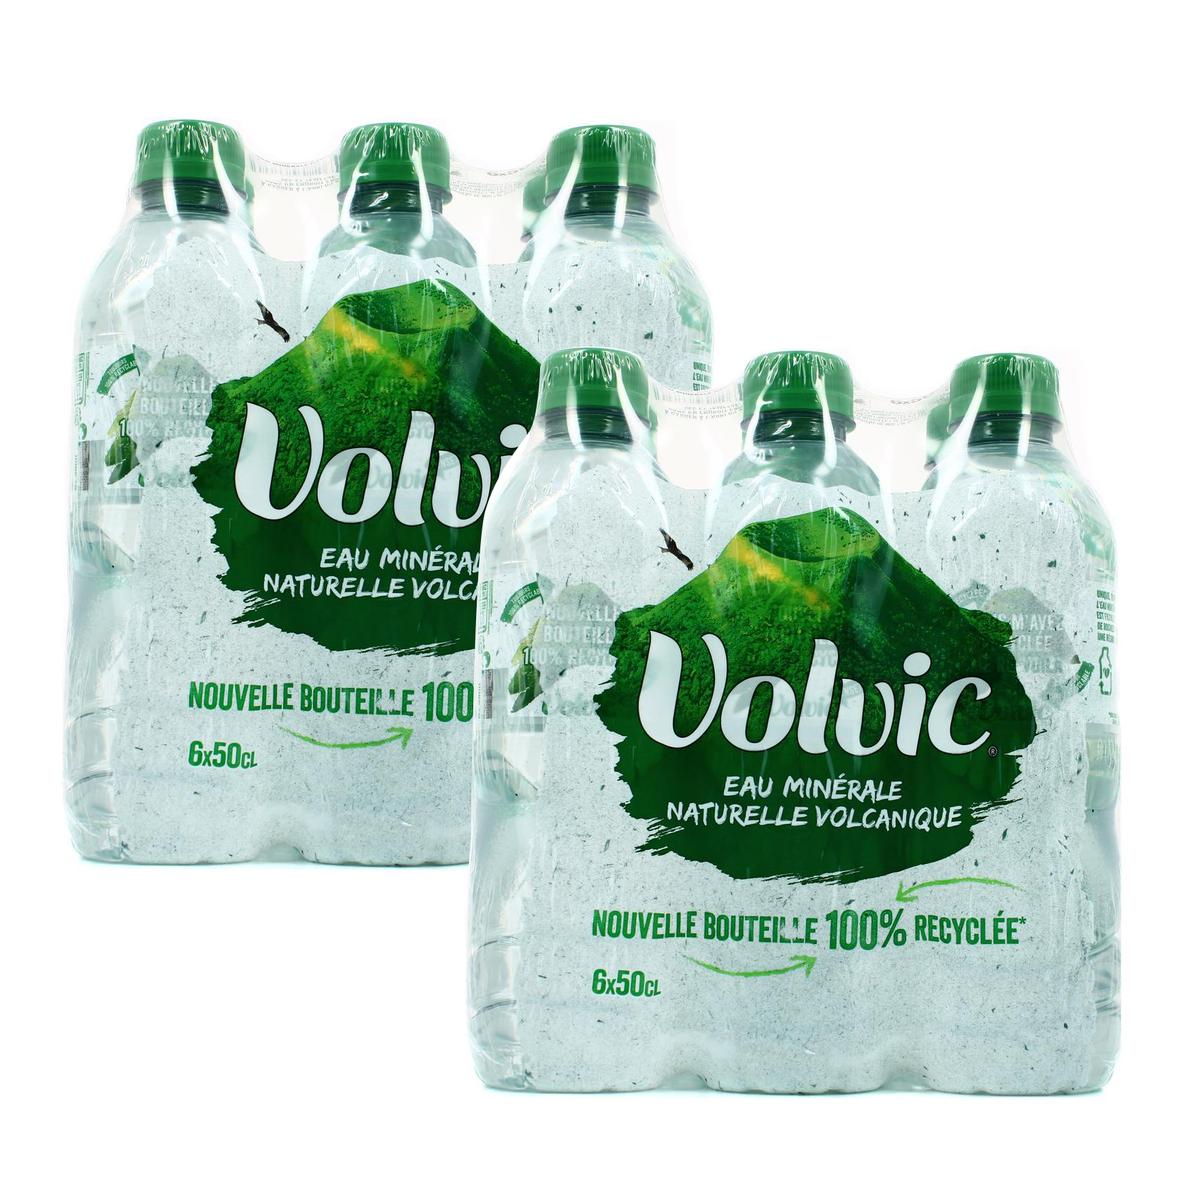 Promotion Volvic Eau minérale naturelle, Lot de 2 bouteilles de 8L